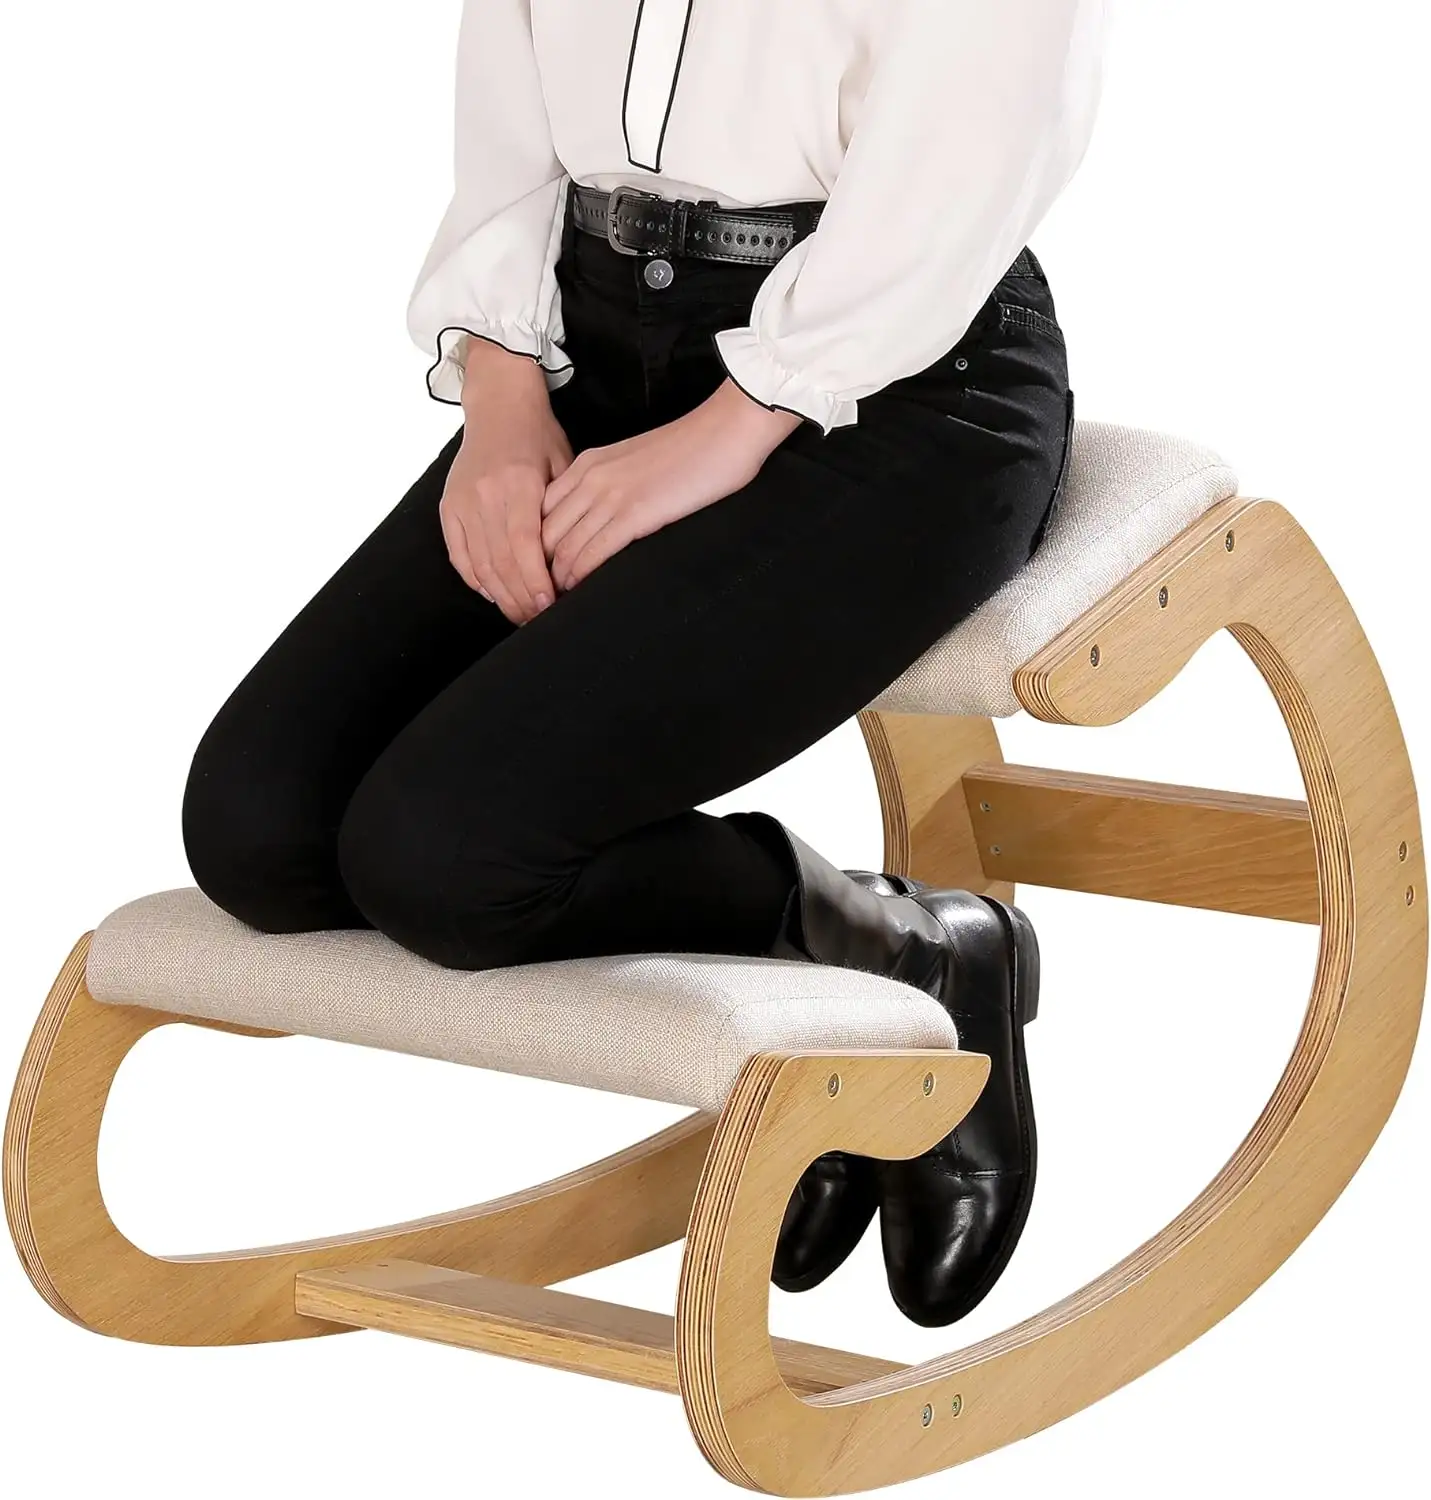 Sedie a dondolo in legno sgabello ergonomico in ginocchio sedia per la postura eretta con cuscino